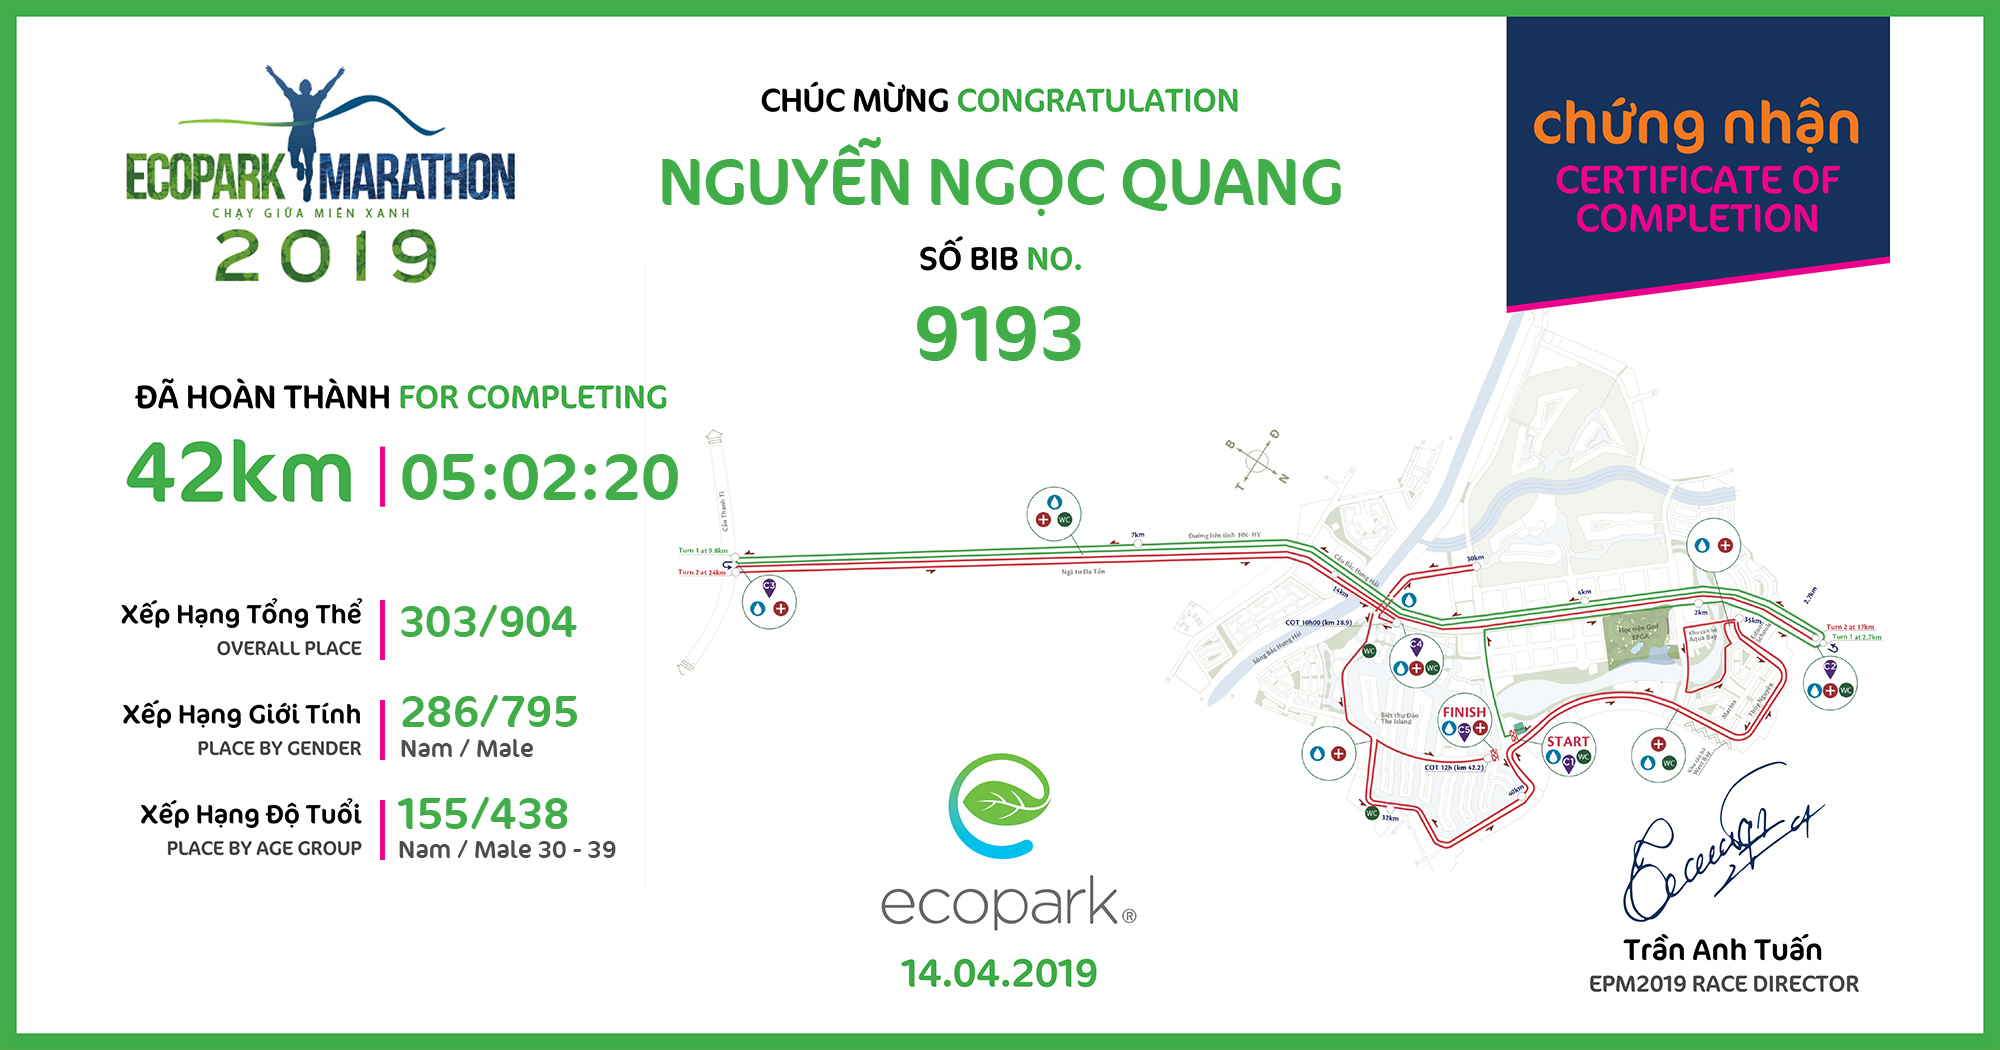 9193 - Nguyễn Ngọc Quang